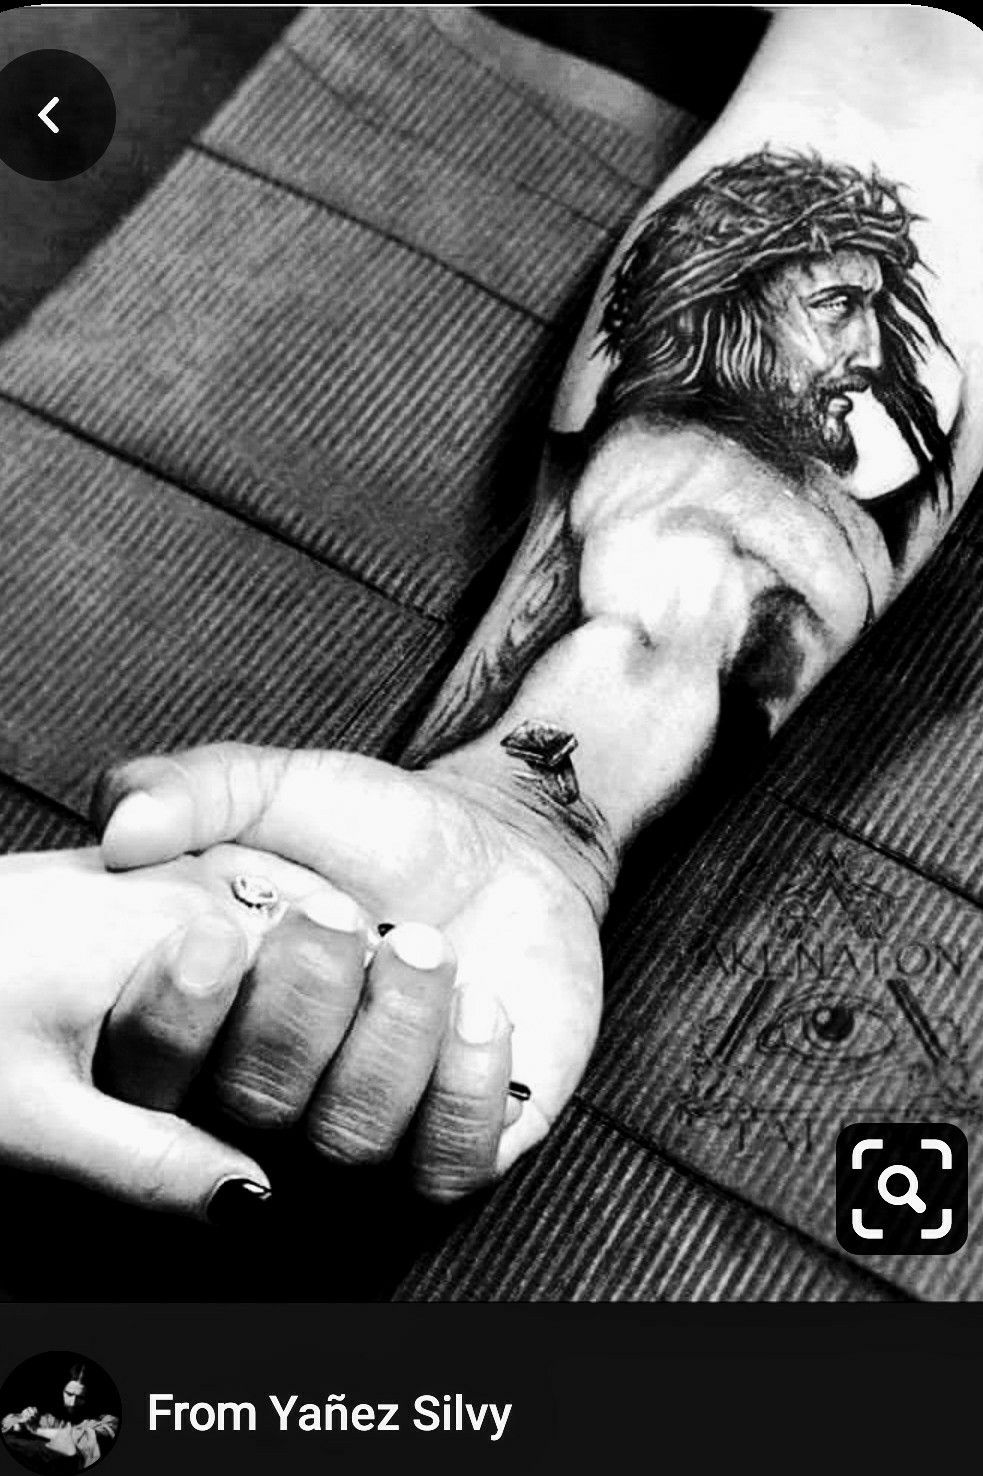 Jesus Tattoo On Arm